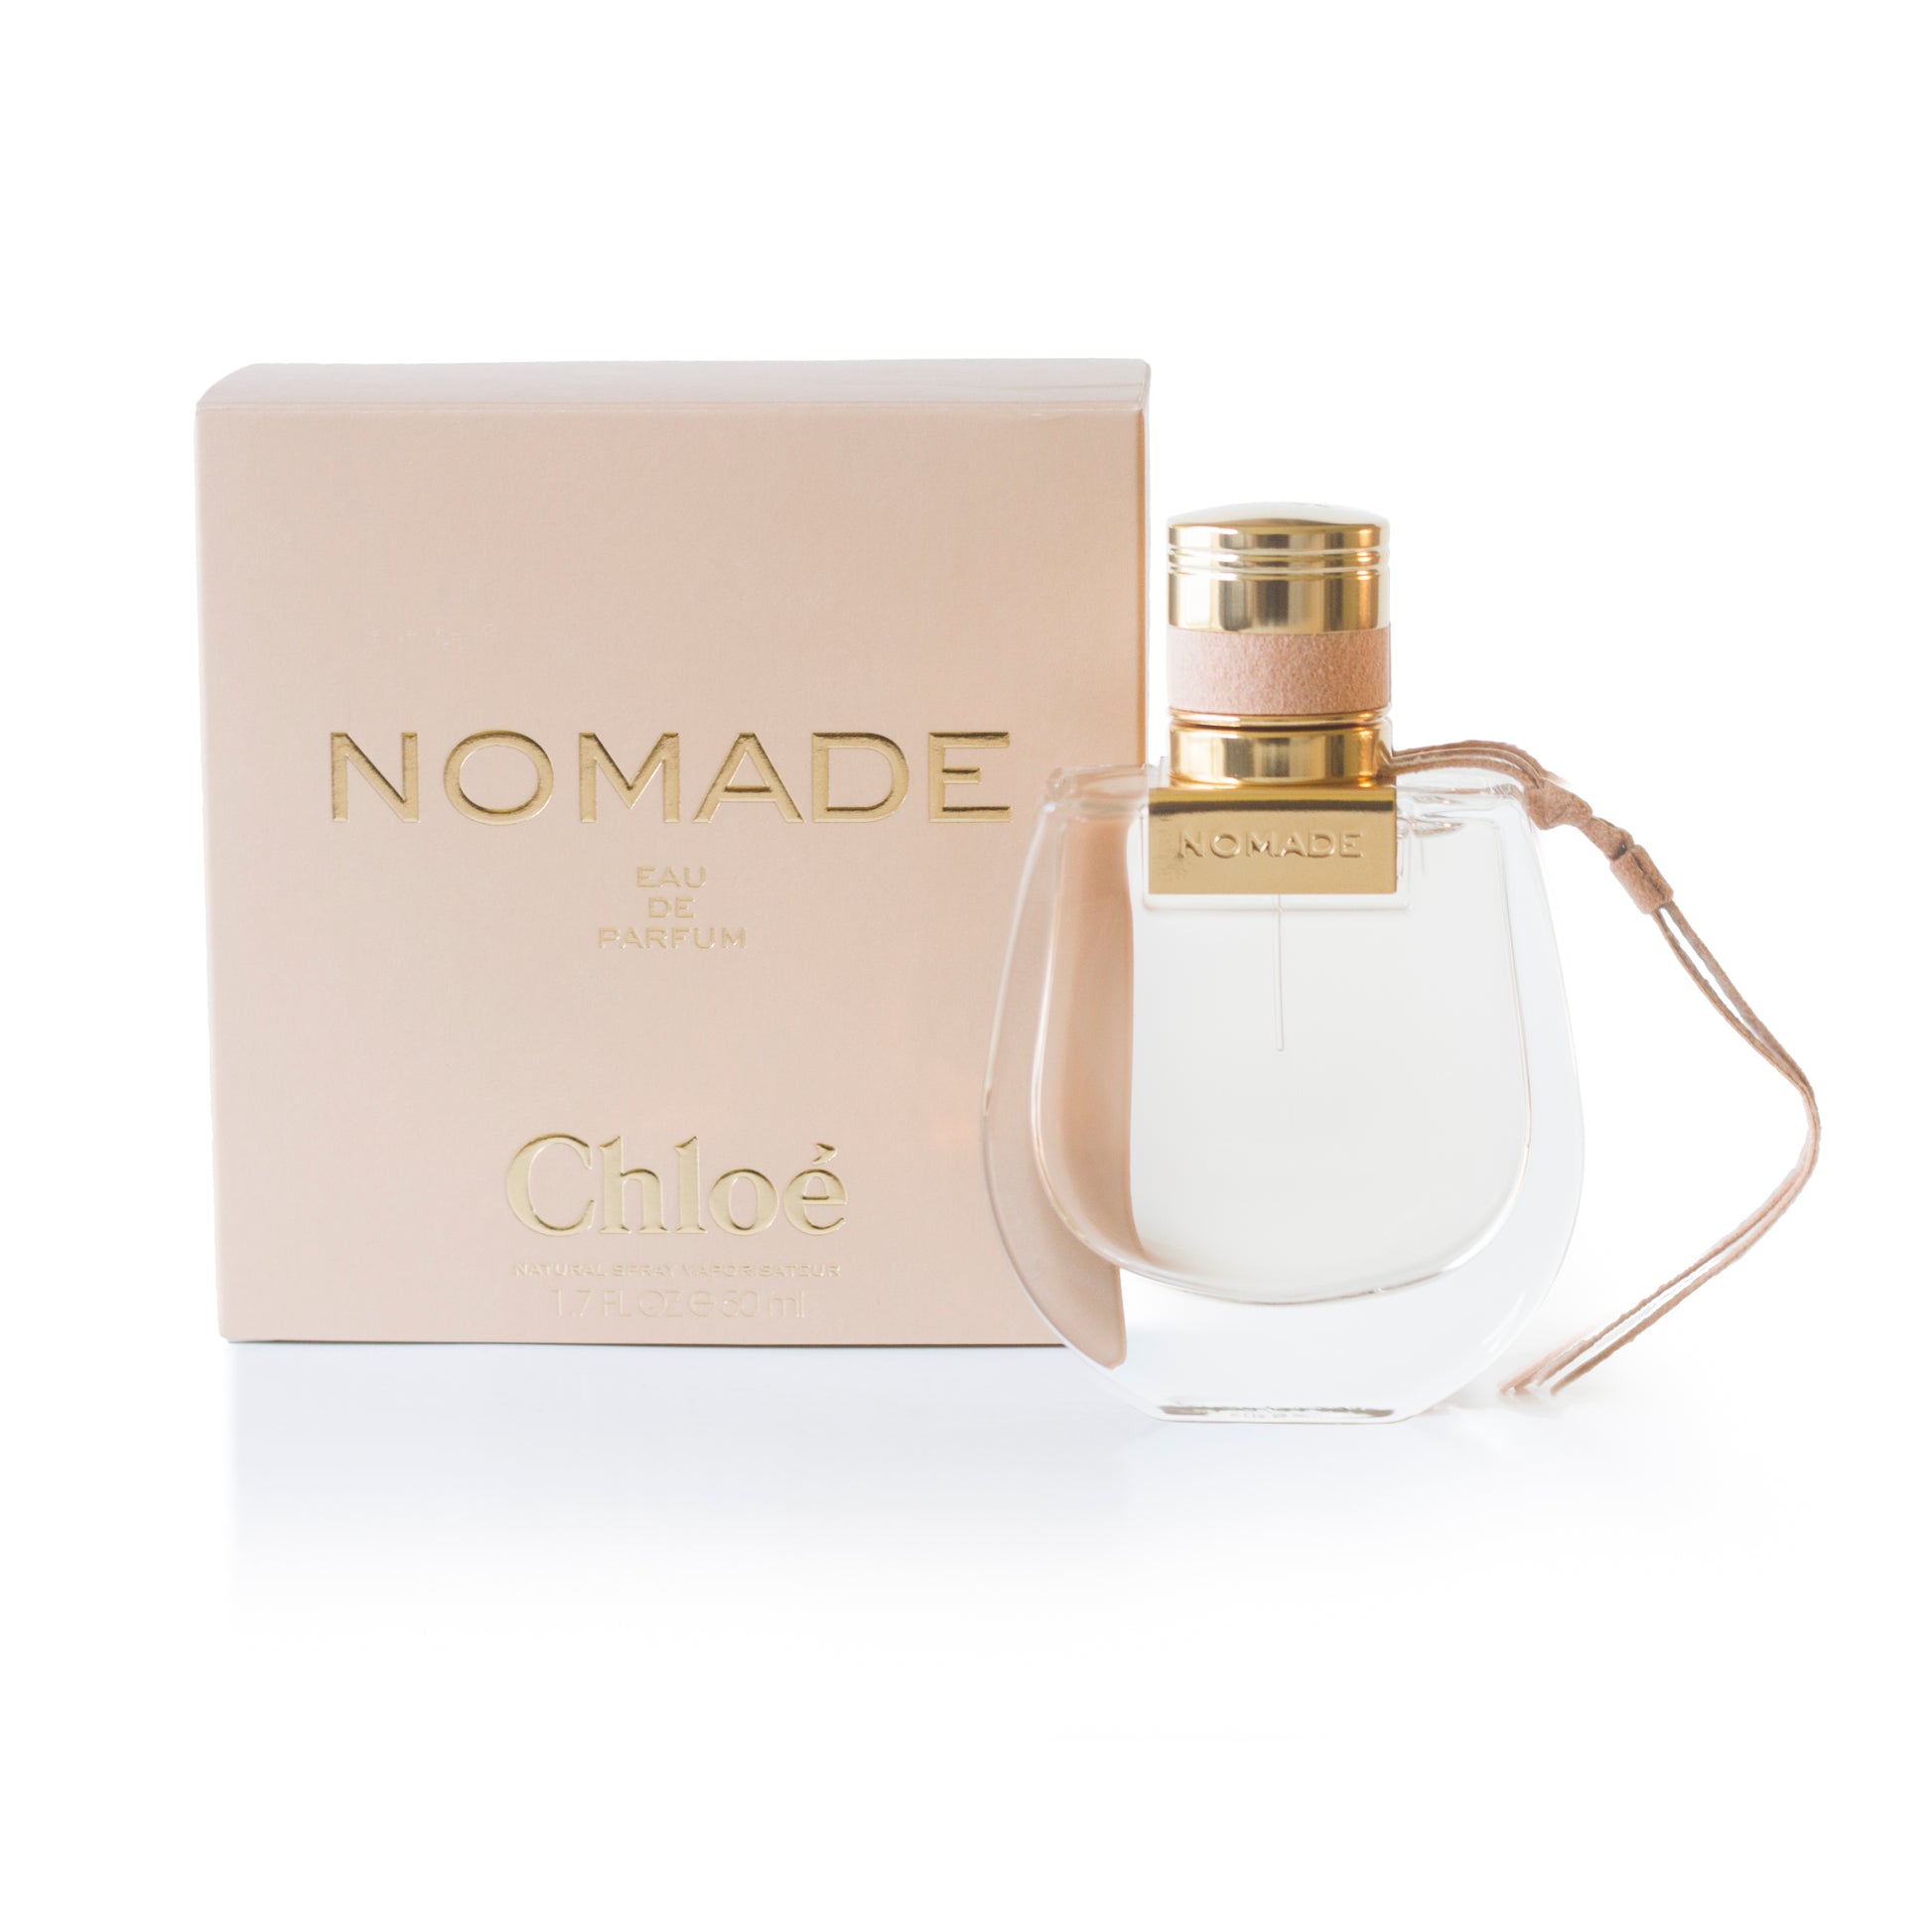 Nomade Eau de Parfum Spray for Women by Chloe 1.7 oz. Click to open in modal